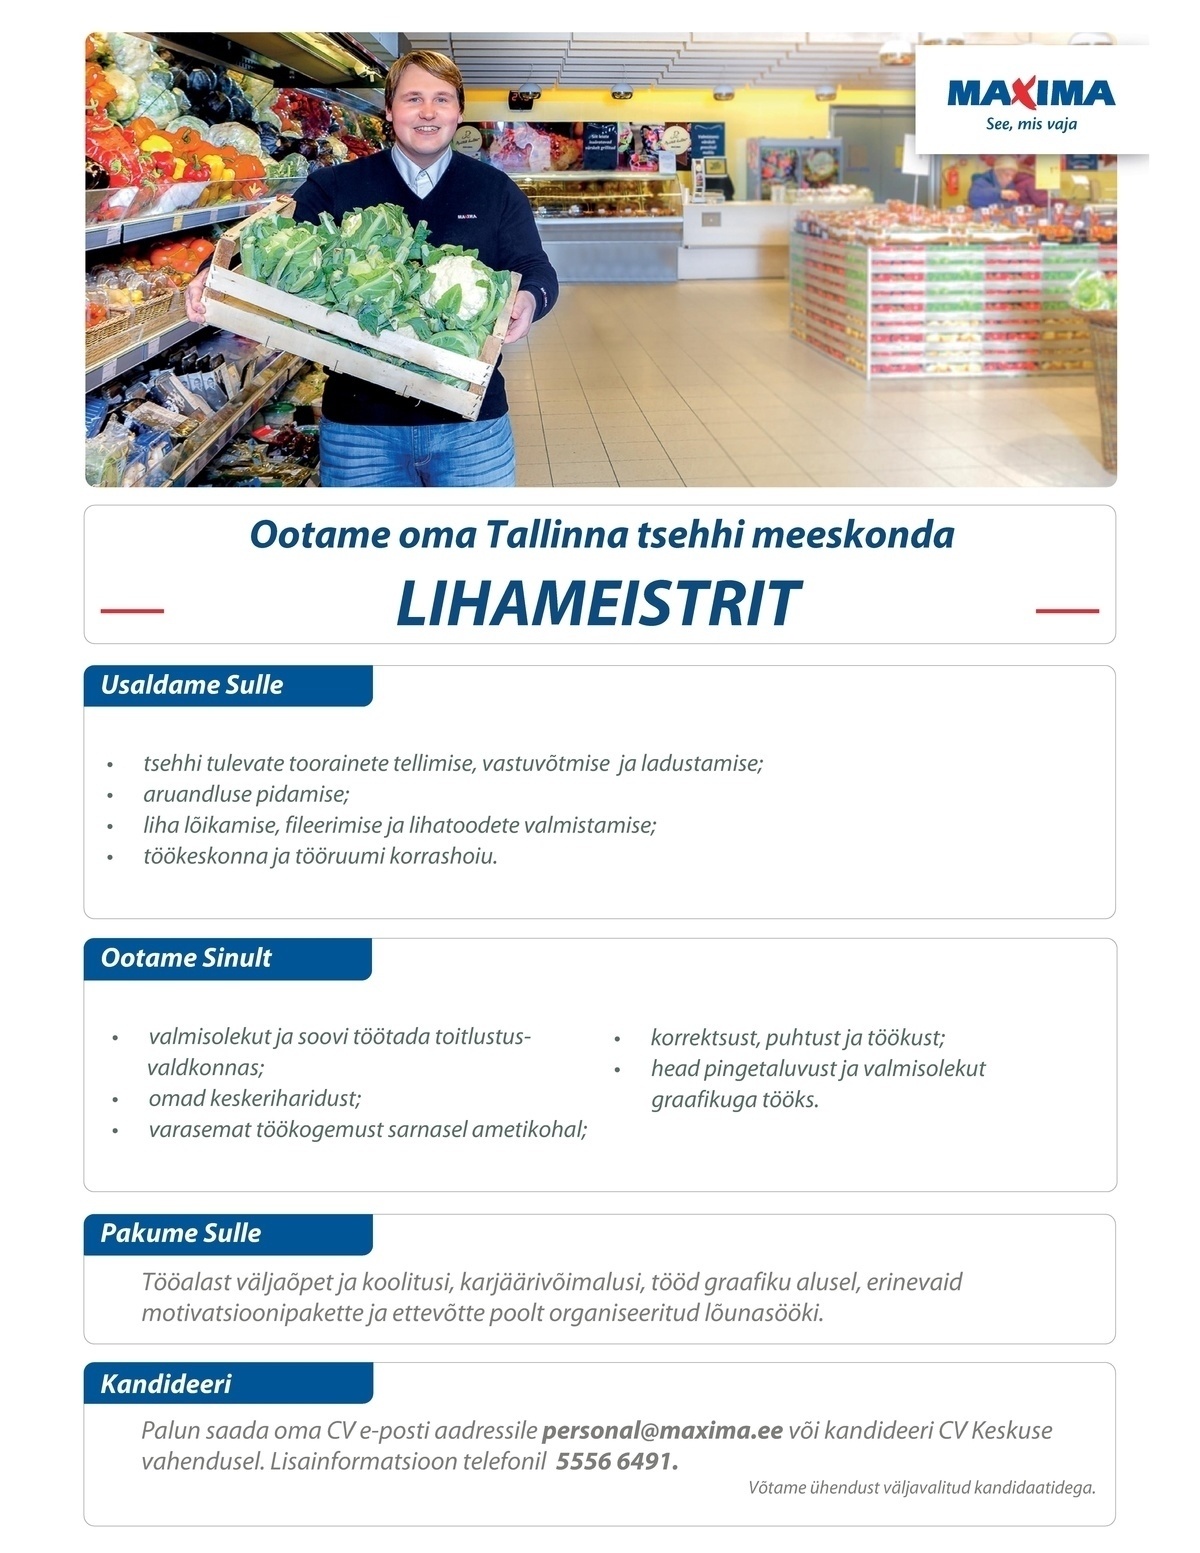 Maxima Eesti OÜ Lihameister Lasnamäe tootmistsehhis